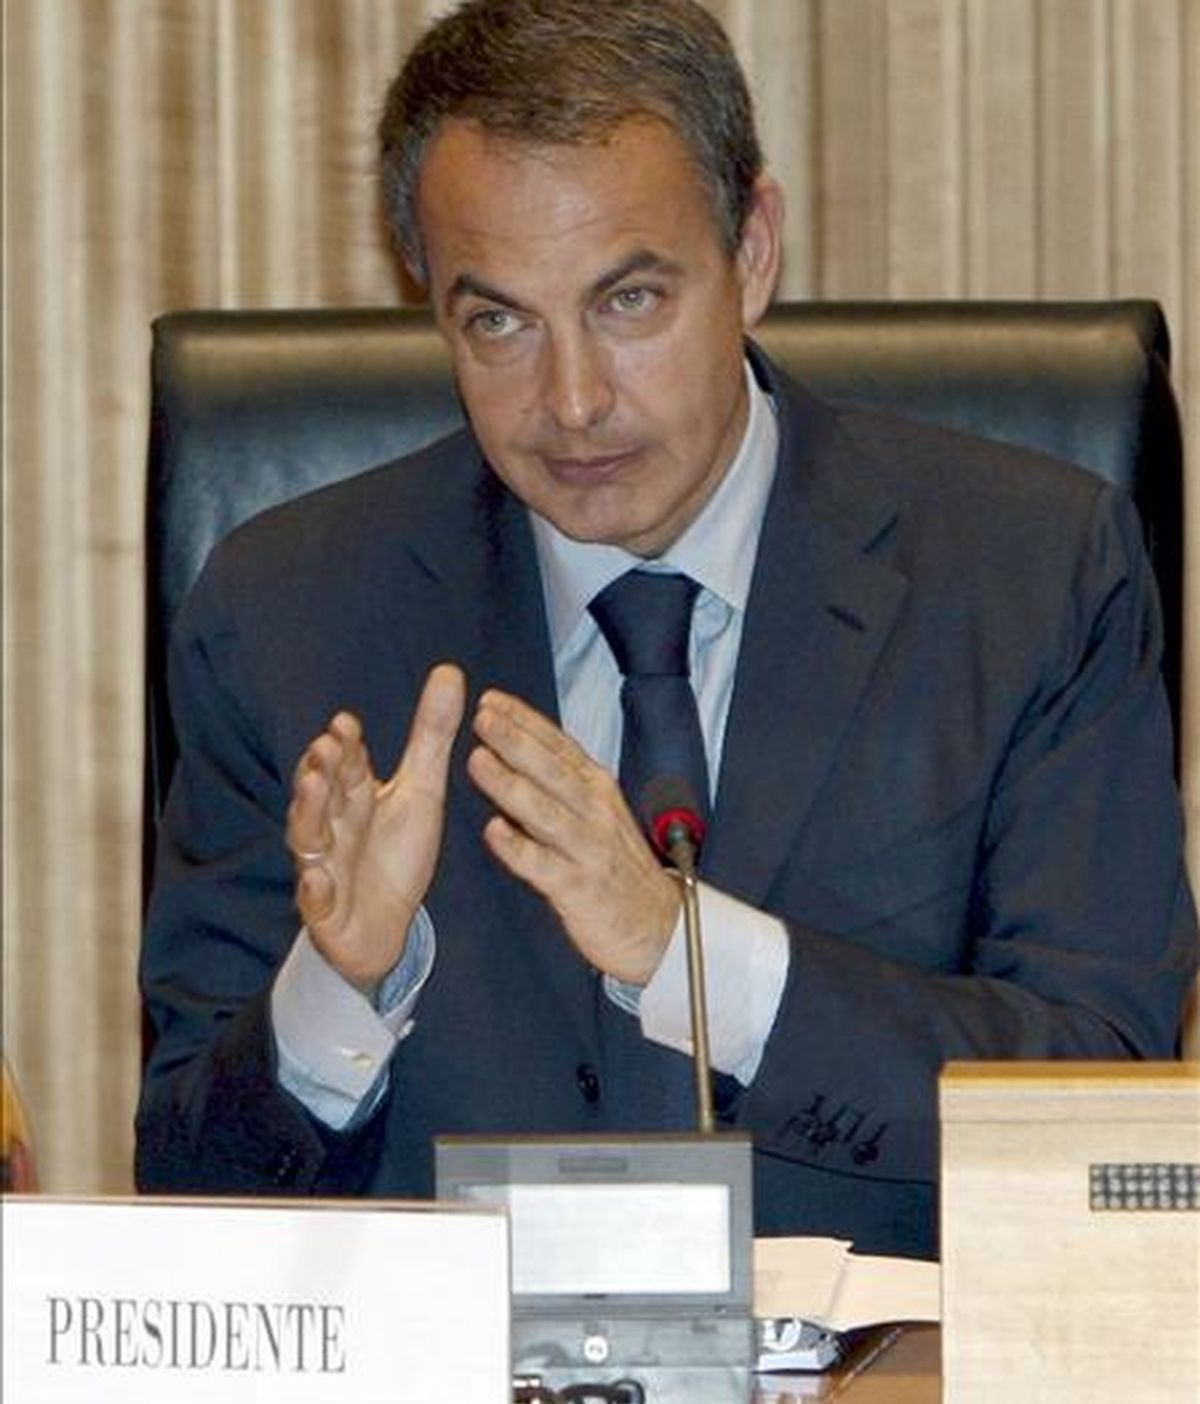 El presidente del Gobierno, José Luis Rodríguez Zapatero, ha adelantado su intención de reducir la publicidad en la televisión pública. Vídeo: Informativos Telecinco.